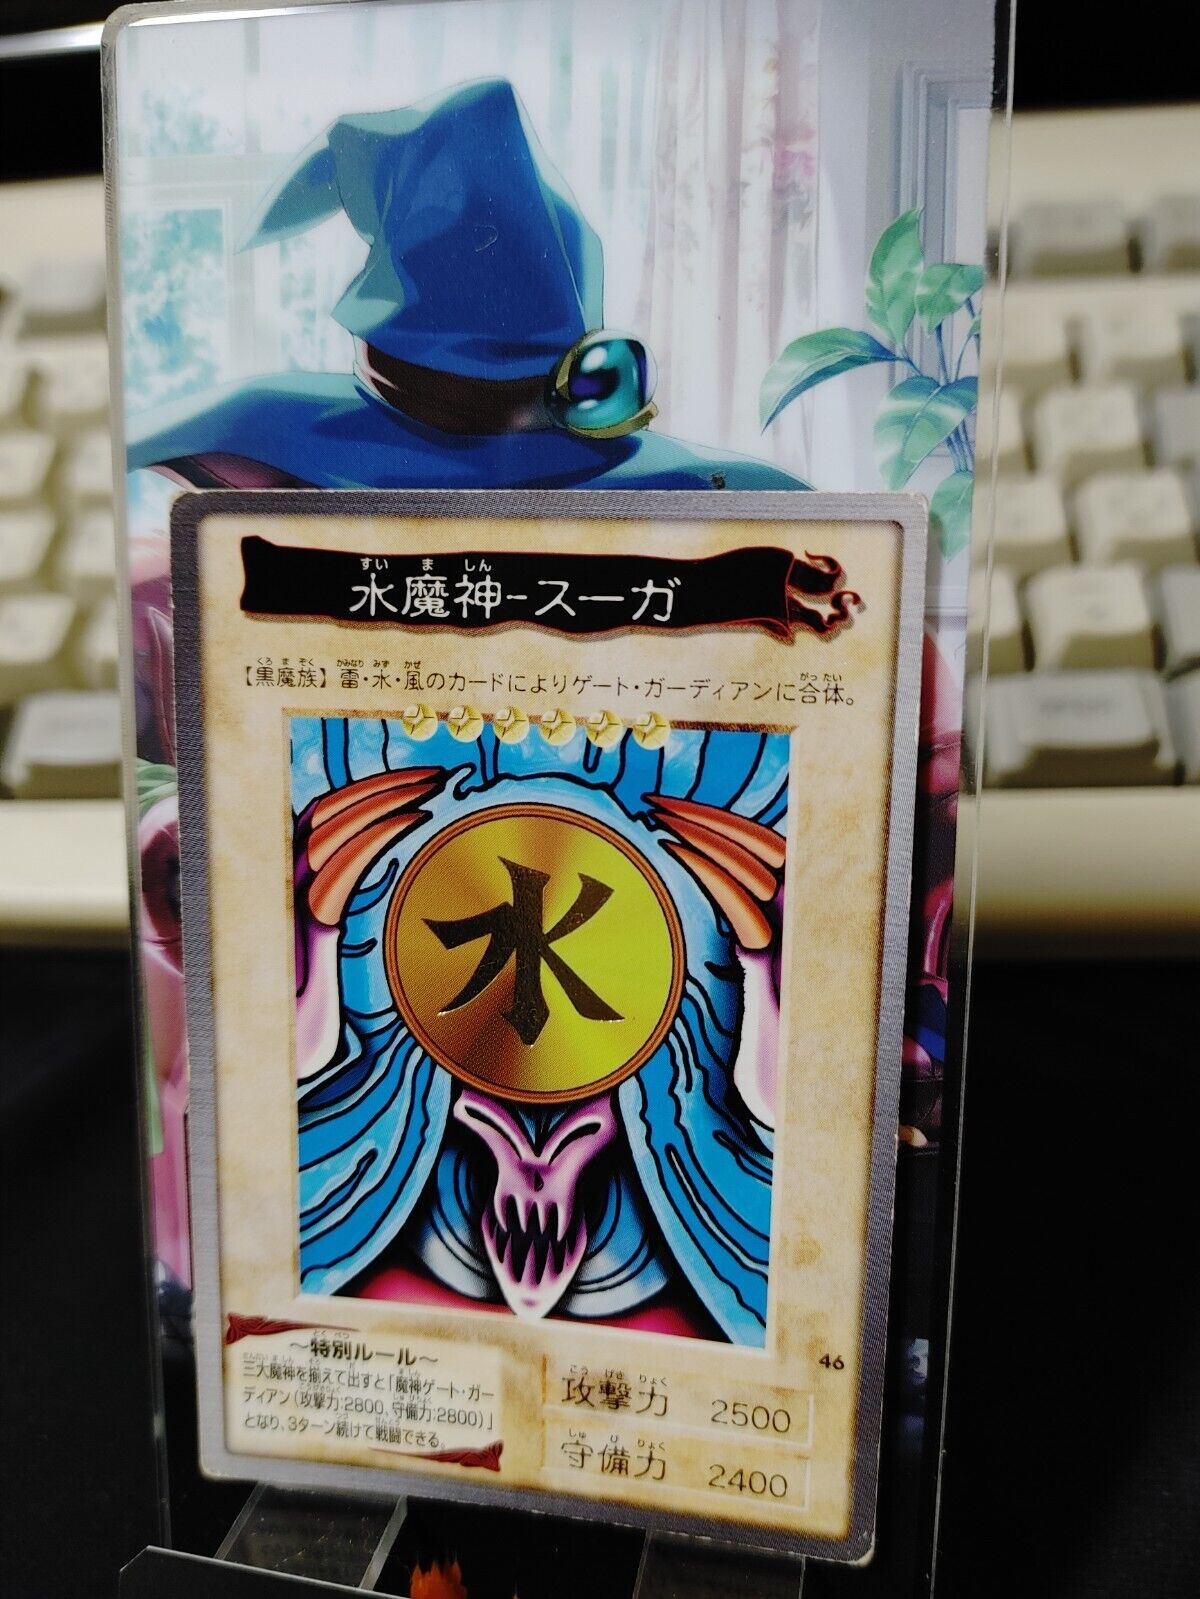 Yu-Gi-Oh Bandai Suijin Carddass Card #46 Japanese Retro Japan Rare 774